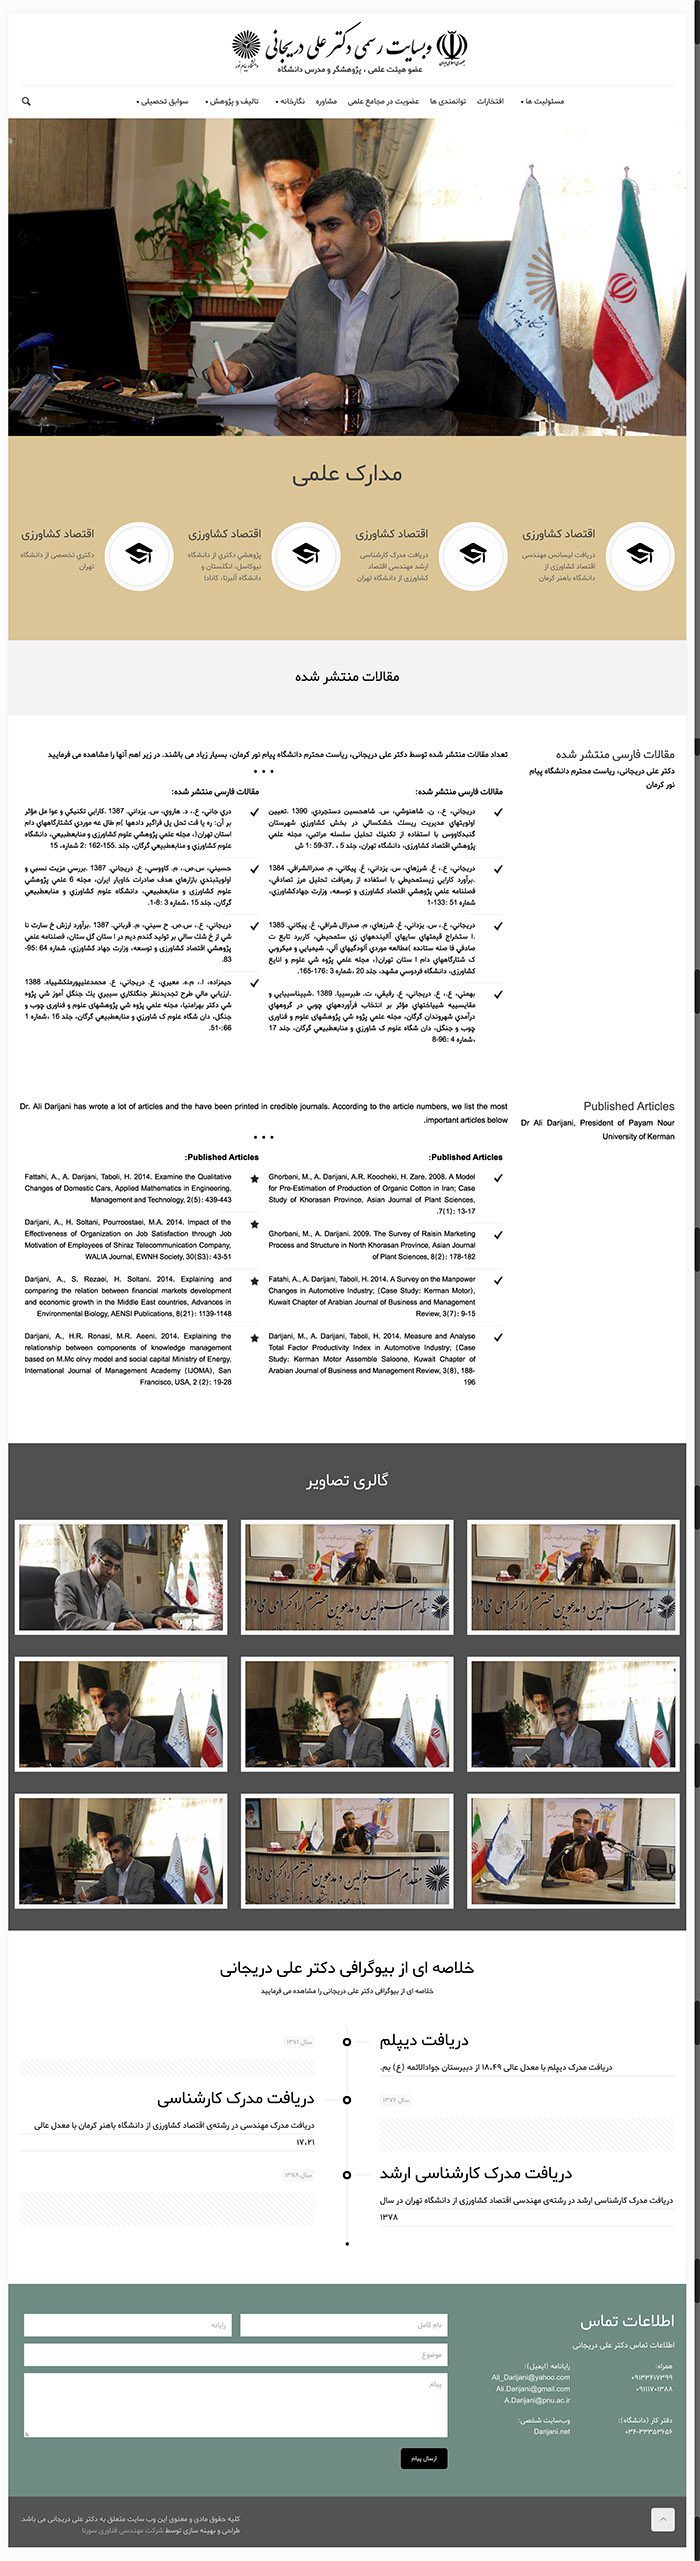 طراحی سایت دکتر دریجانی توسط شرکت طراحی سایت سورنا در کرمان